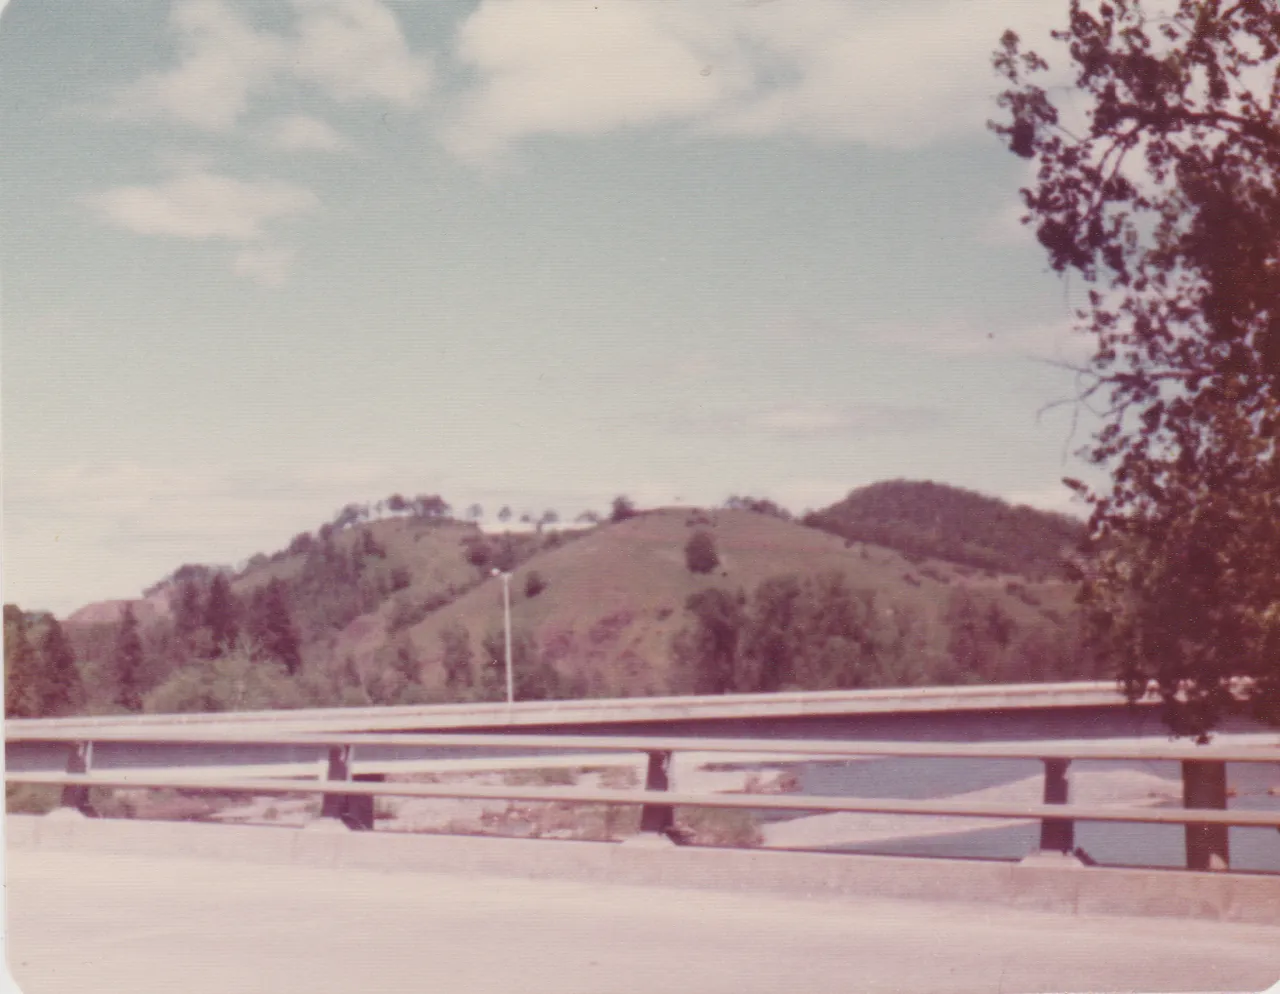 1975-06 - Orange Tint - Octagon Shape - roads, trees, bridges, car, flowers, sink, etc, but not sure when or where, 6pics-5.png